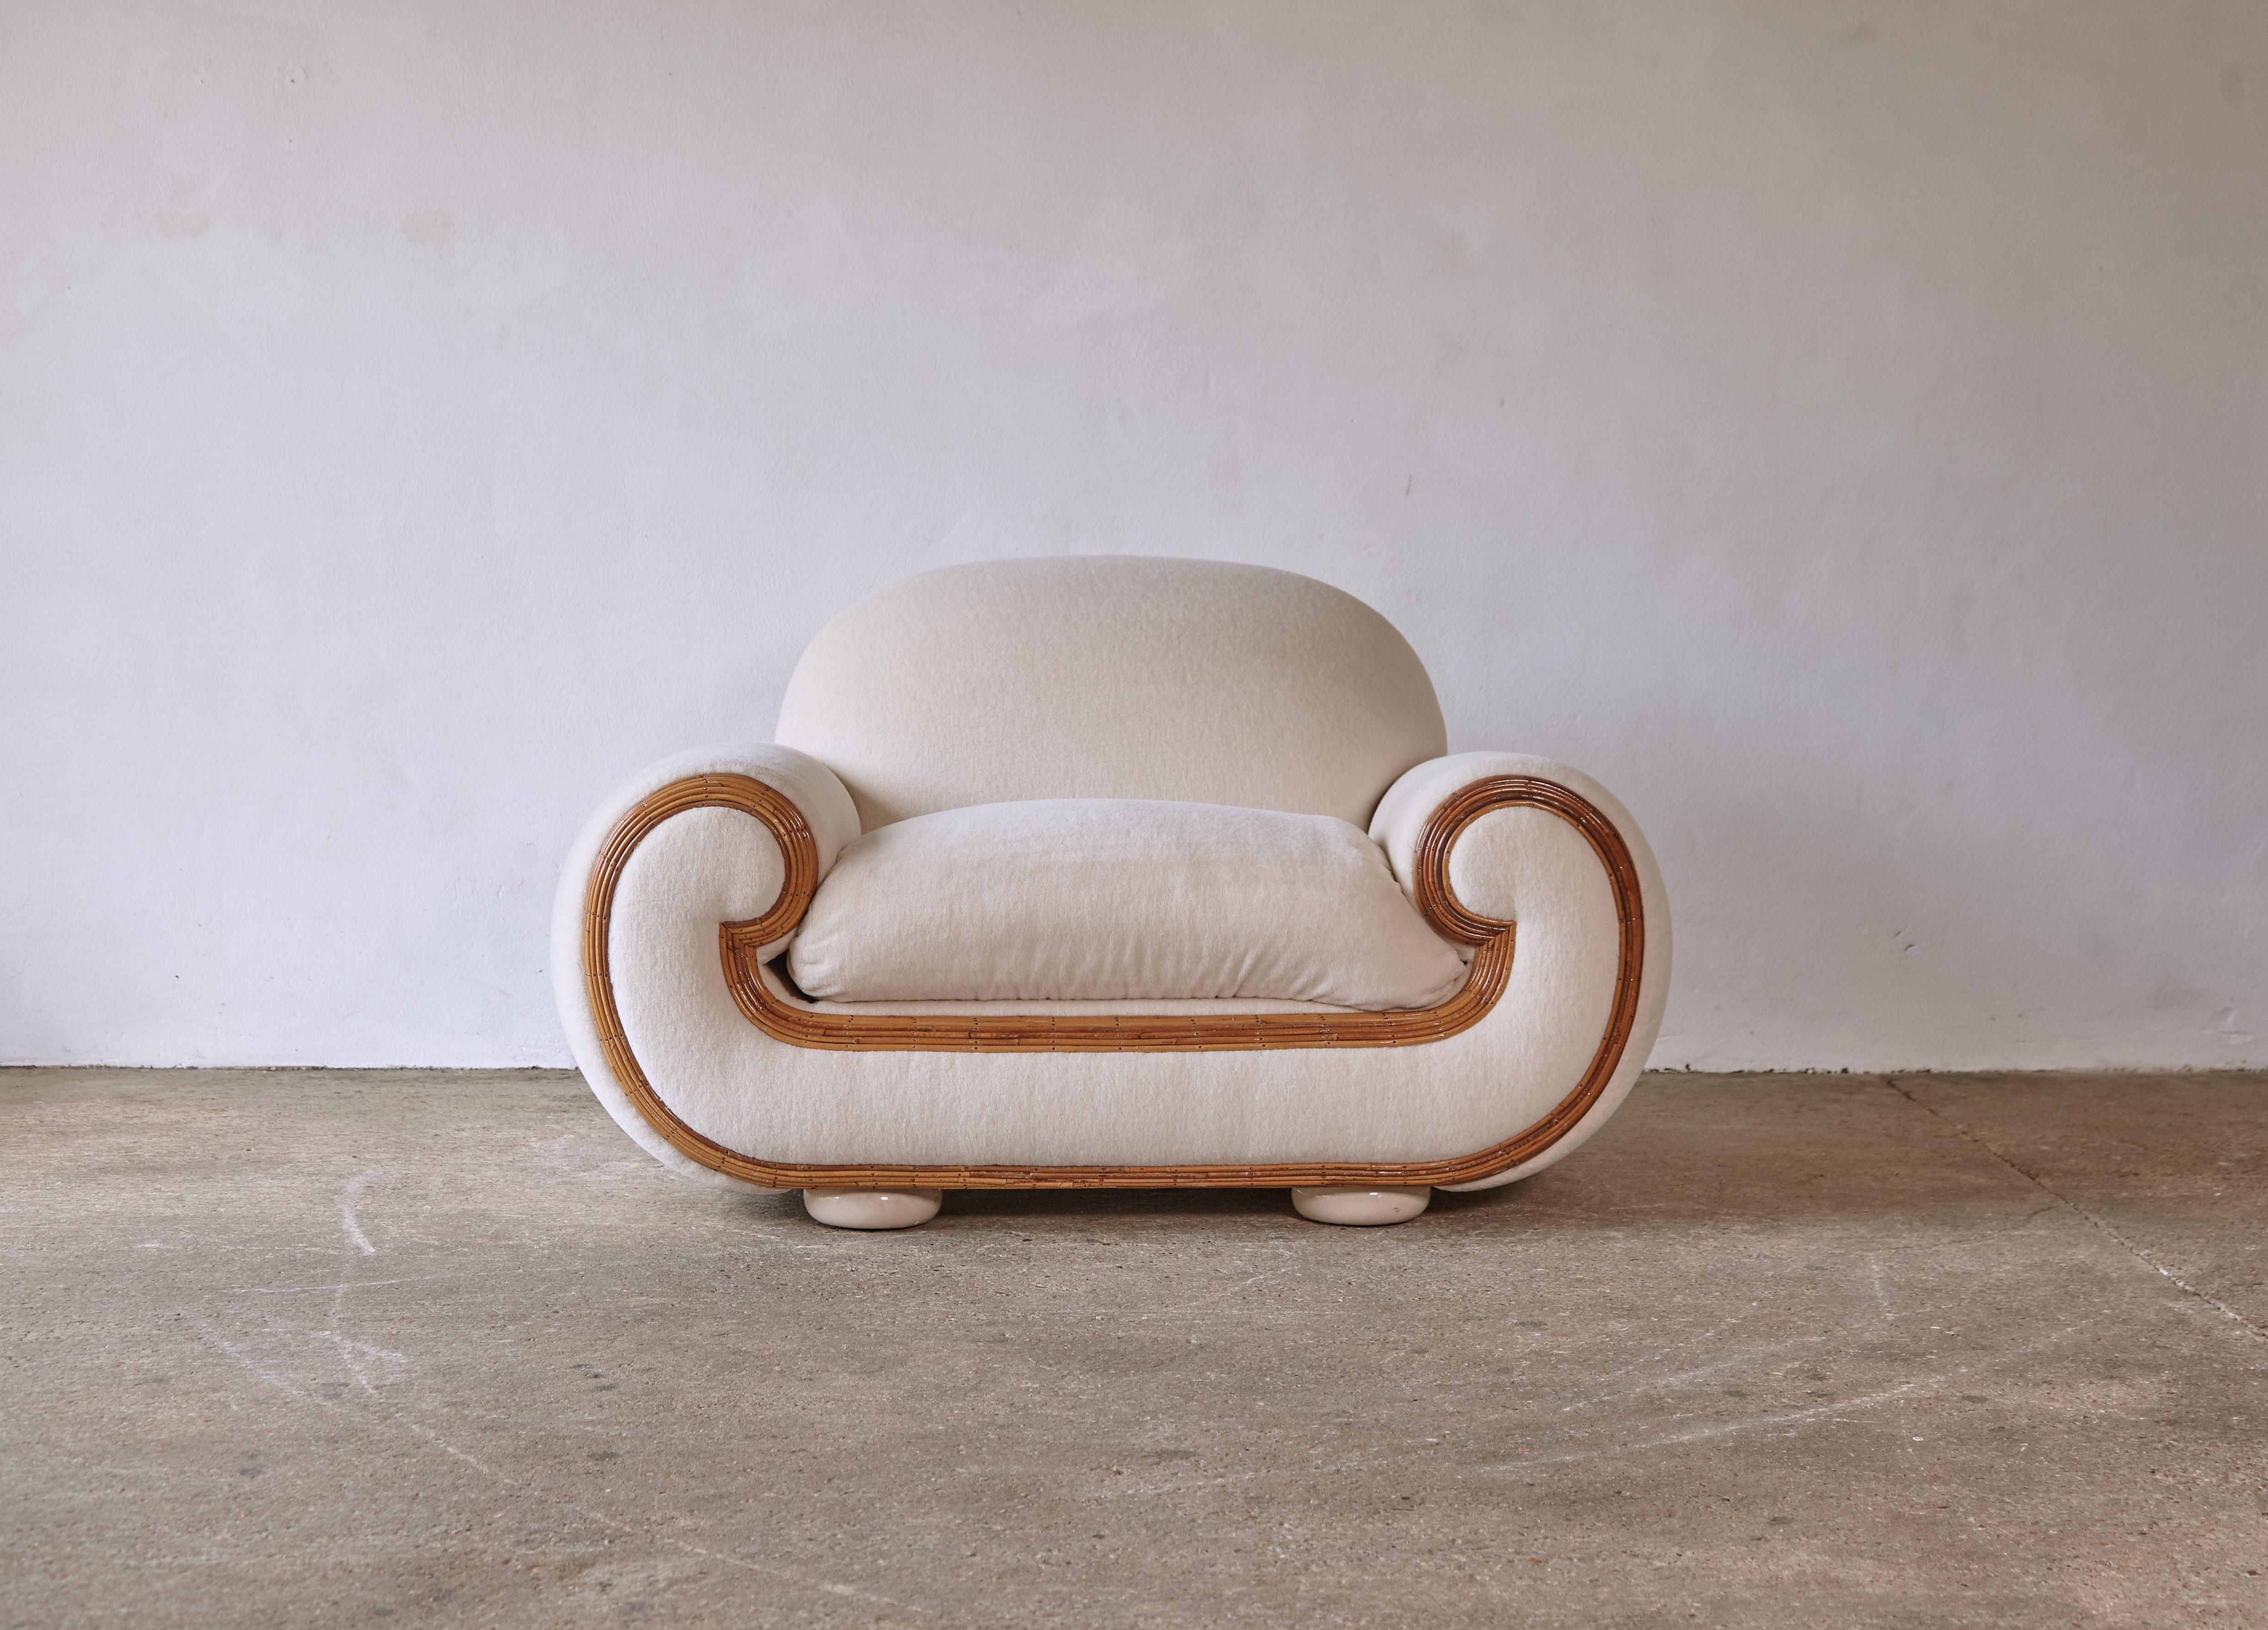 Un énorme, rare et surdimensionné fauteuil / causeuse Vivai del Sud, Italie, années 1970/80. Nouvellement revêtu d'un tissu crème de qualité supérieure, 100 % Alpaga. Une pièce vraiment amusante - veuillez vérifier les dimensions car cette chaise